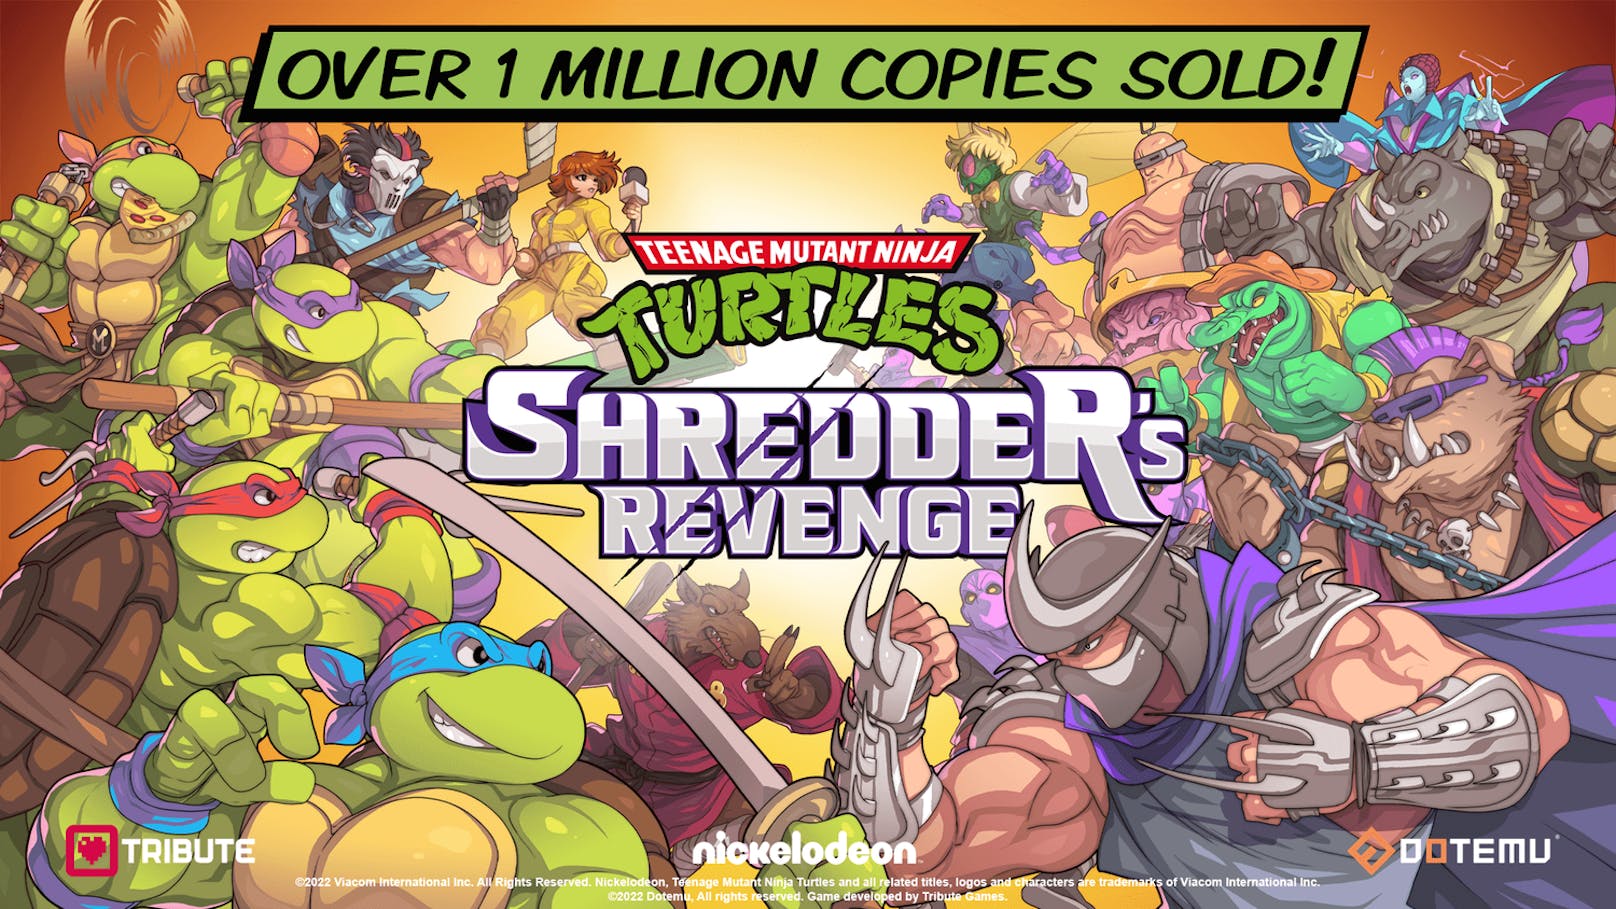 Teenage Mutant Ninja Turtles: Shredder’s Revenge - Über eine Million verkaufte Exemplare nach nur einer Woche.